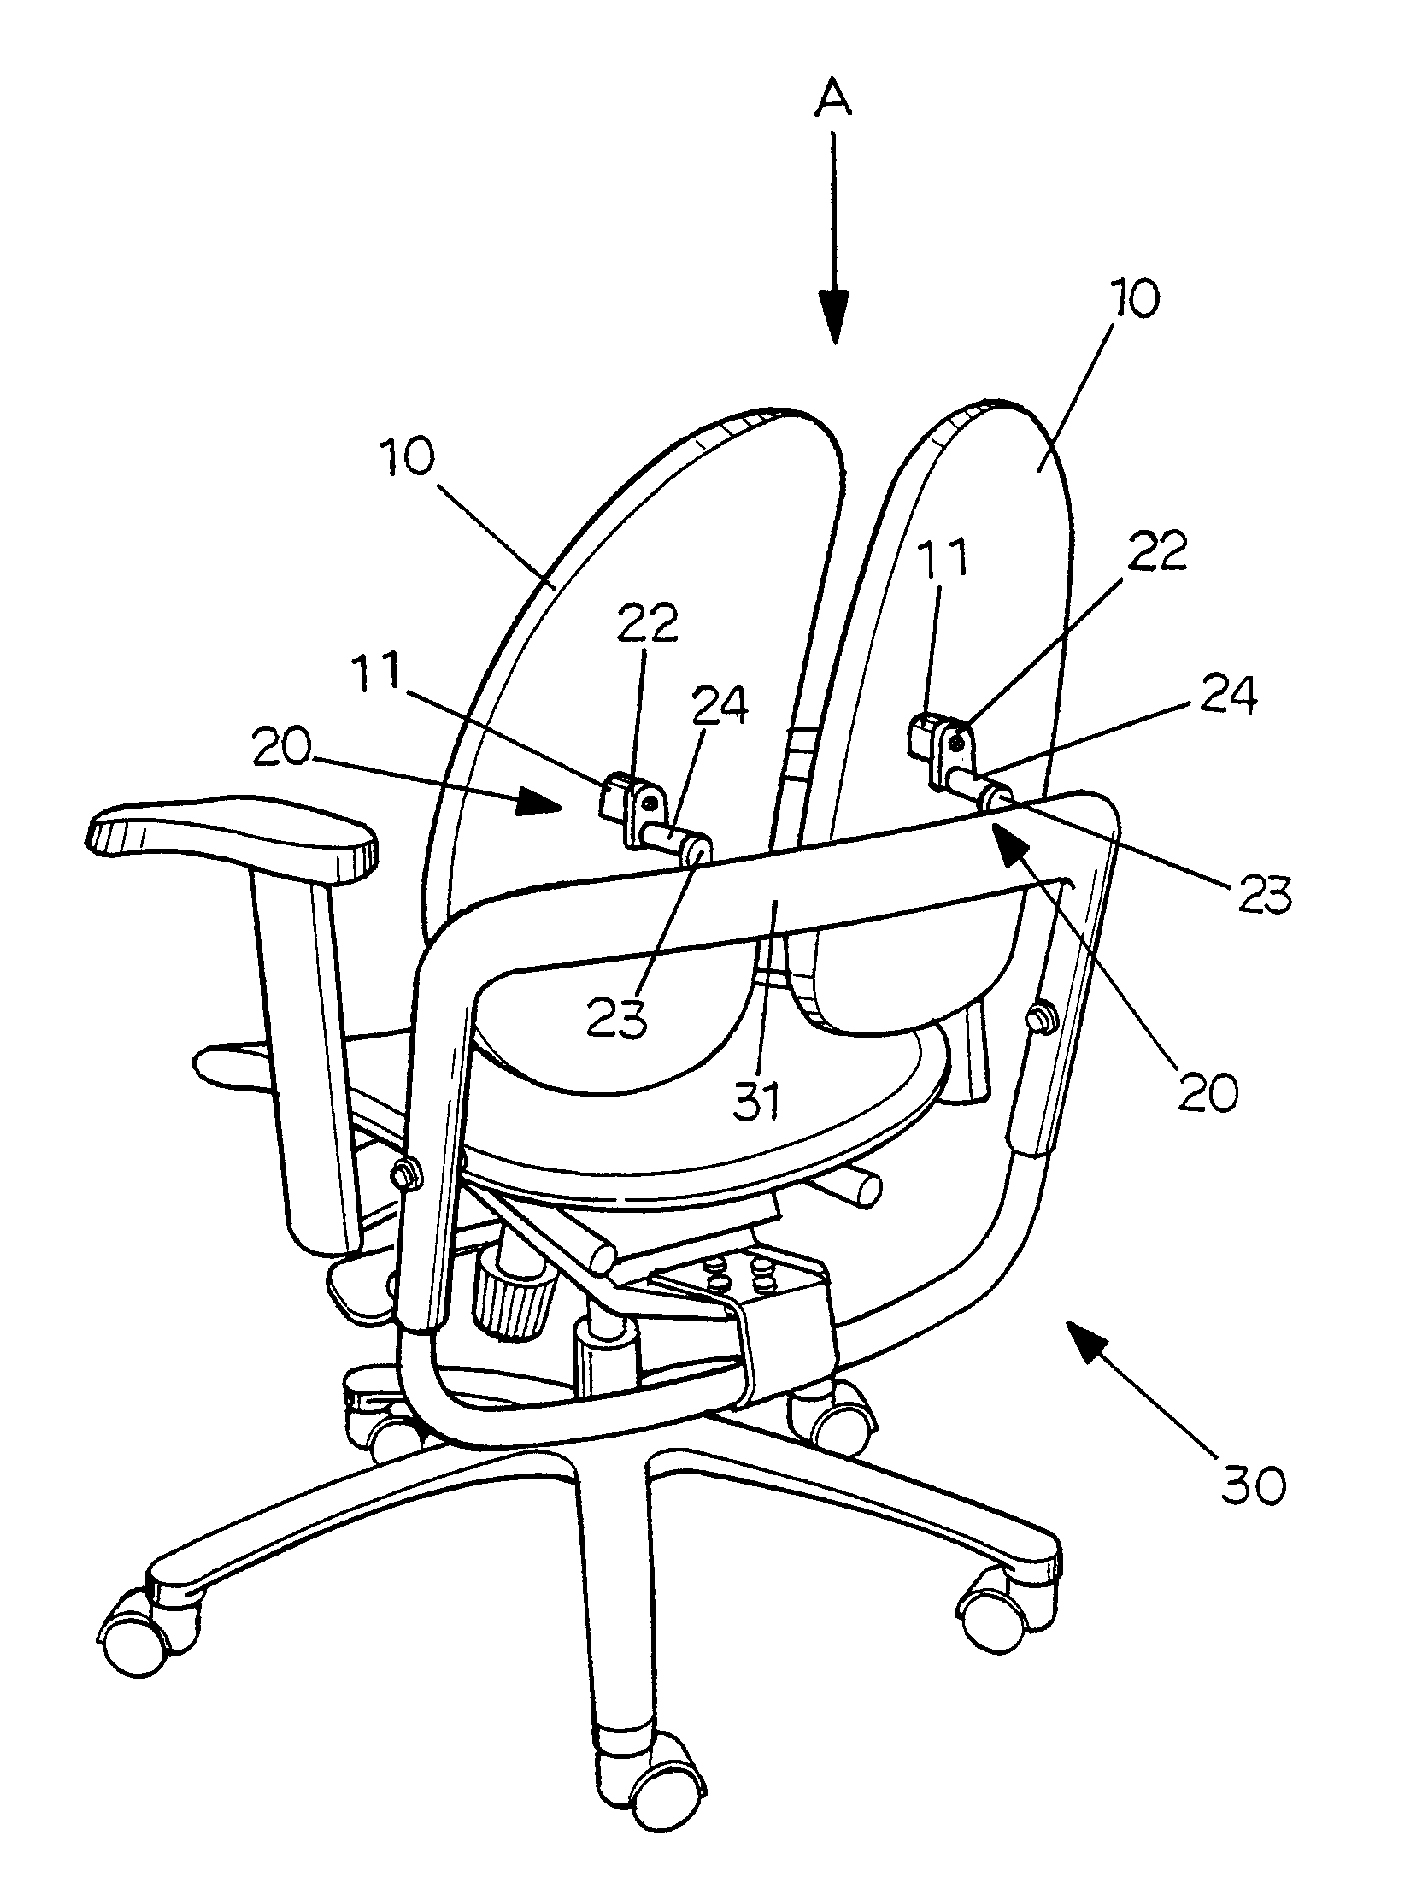 Backrest device